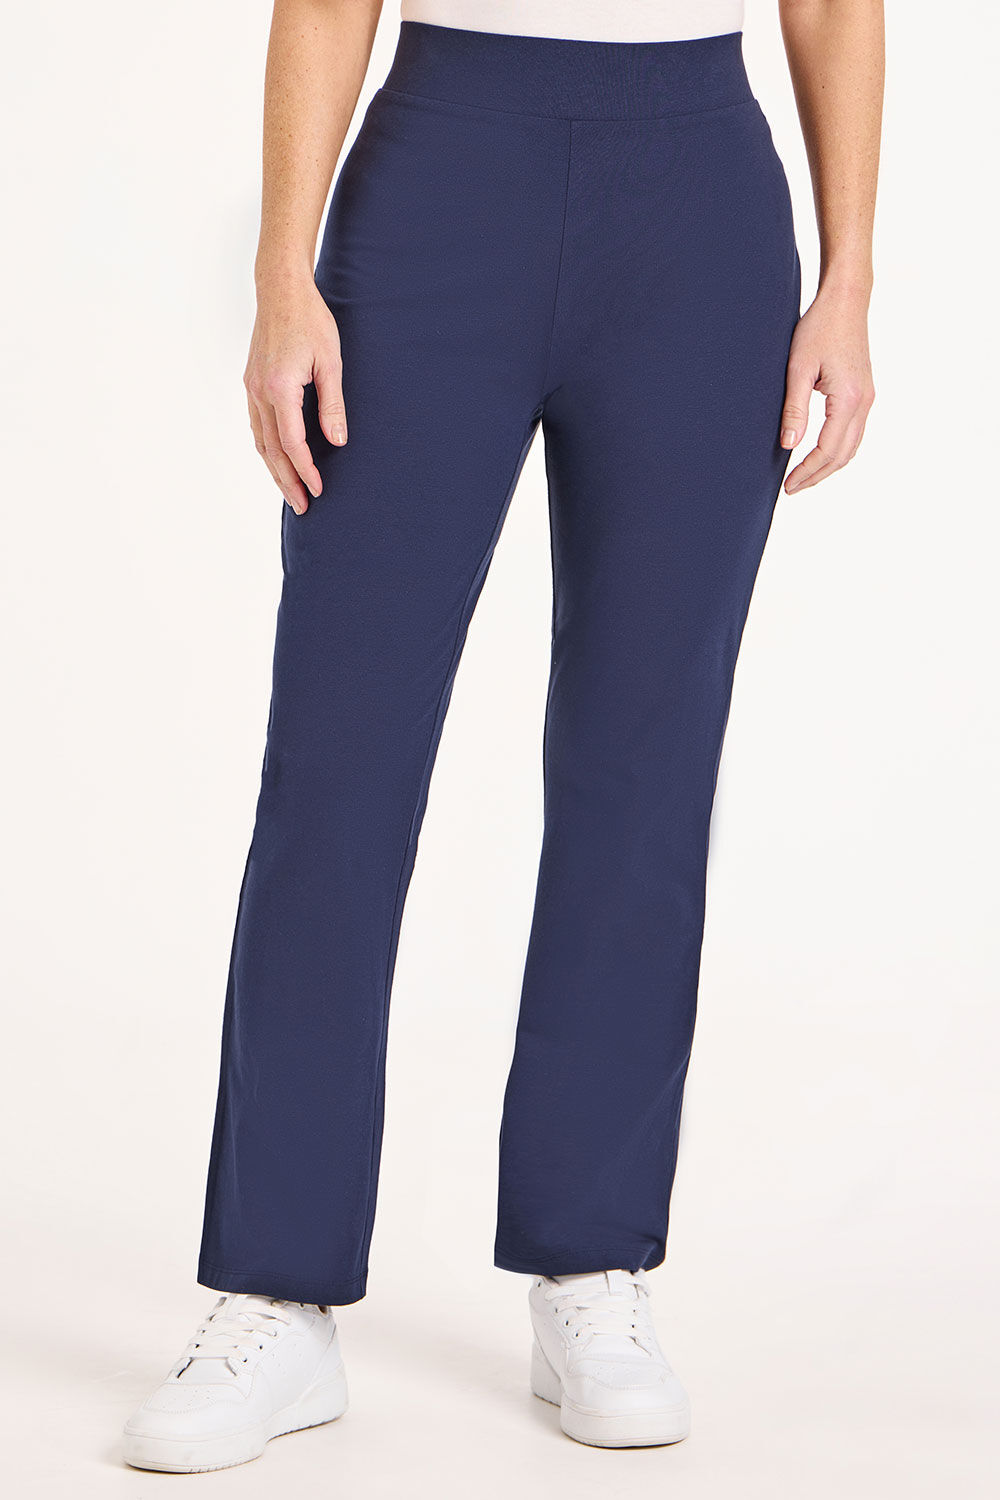 Bonmarche Navy Short Yoga Pants - Blue - Size 12